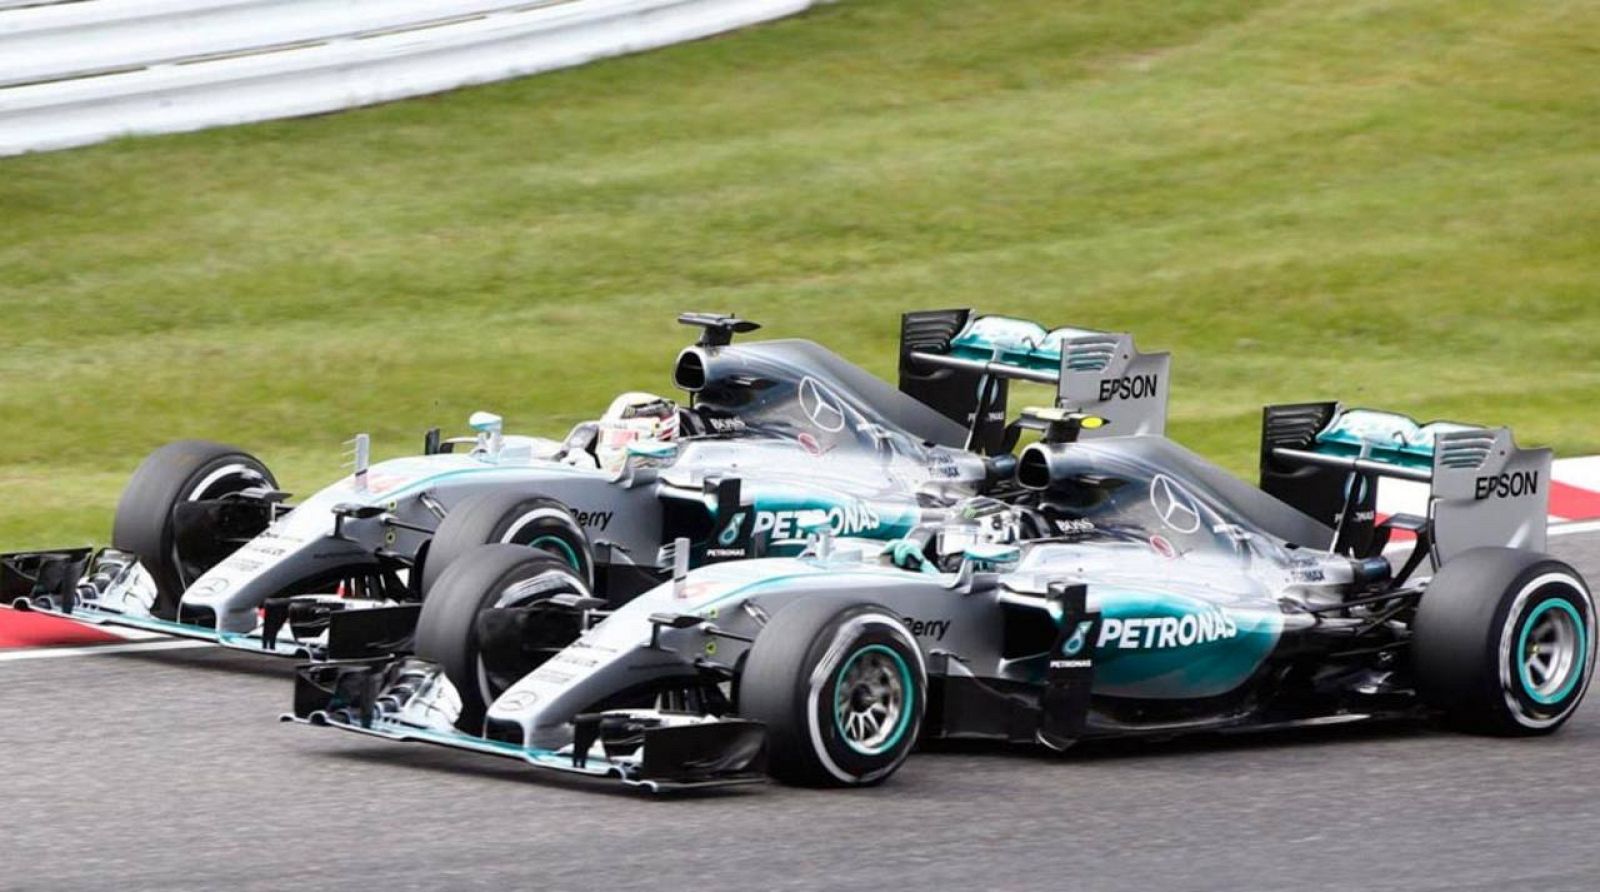 La Fórmula 1 arranca su tríptico americano con Rosberg como líder destacado